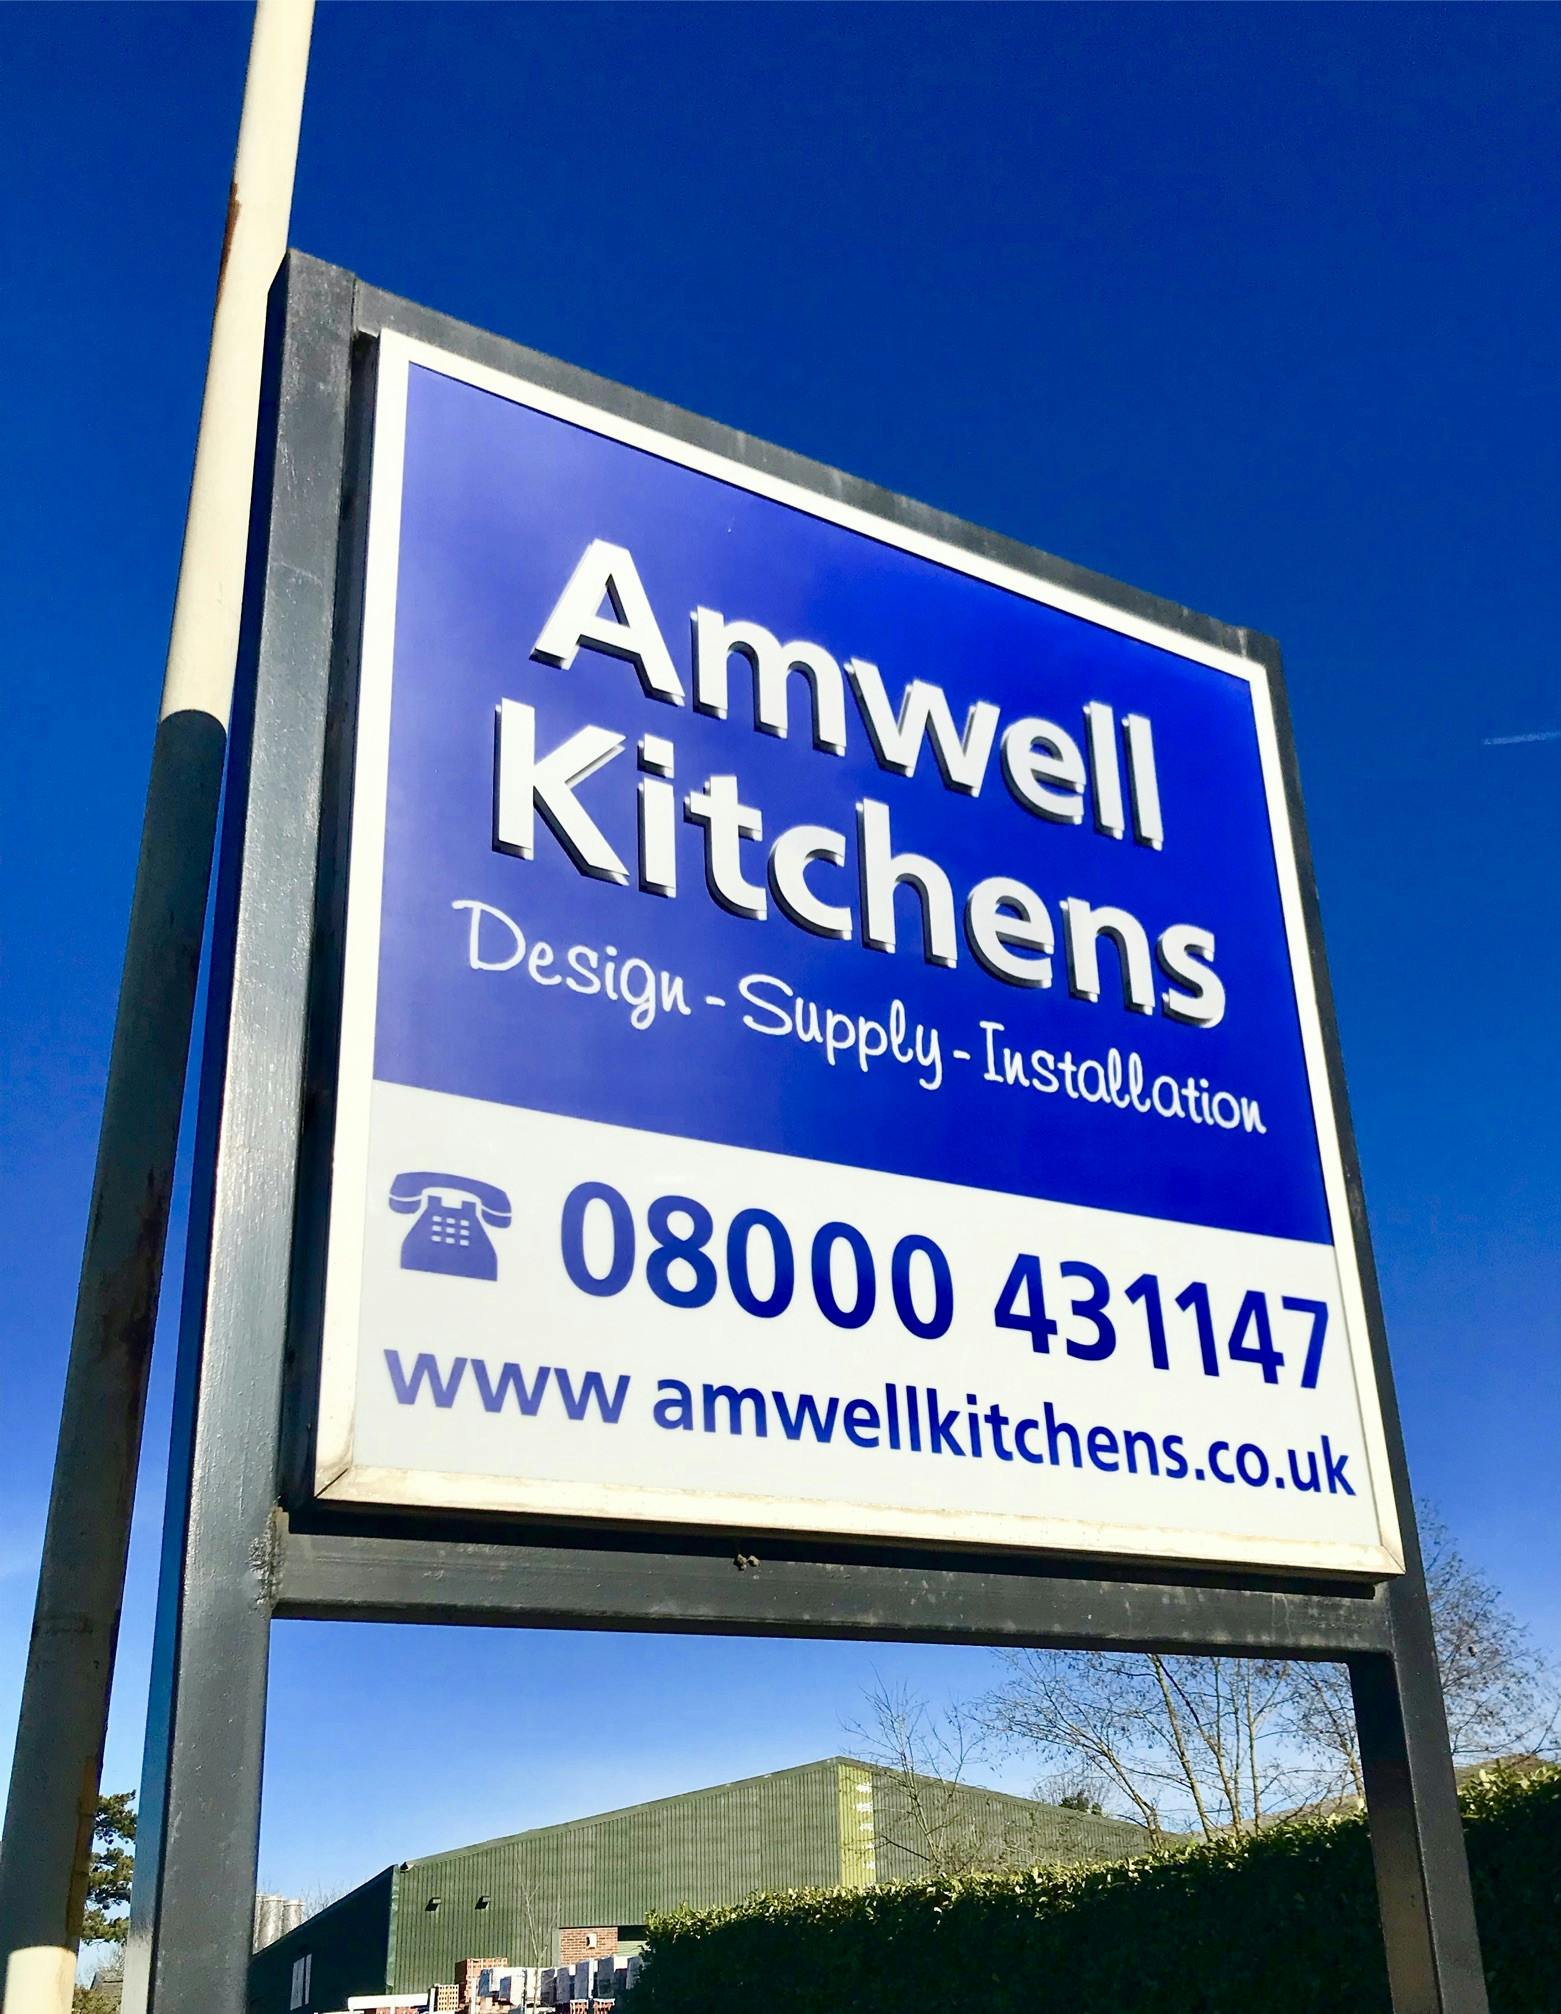 Amwell kitchens